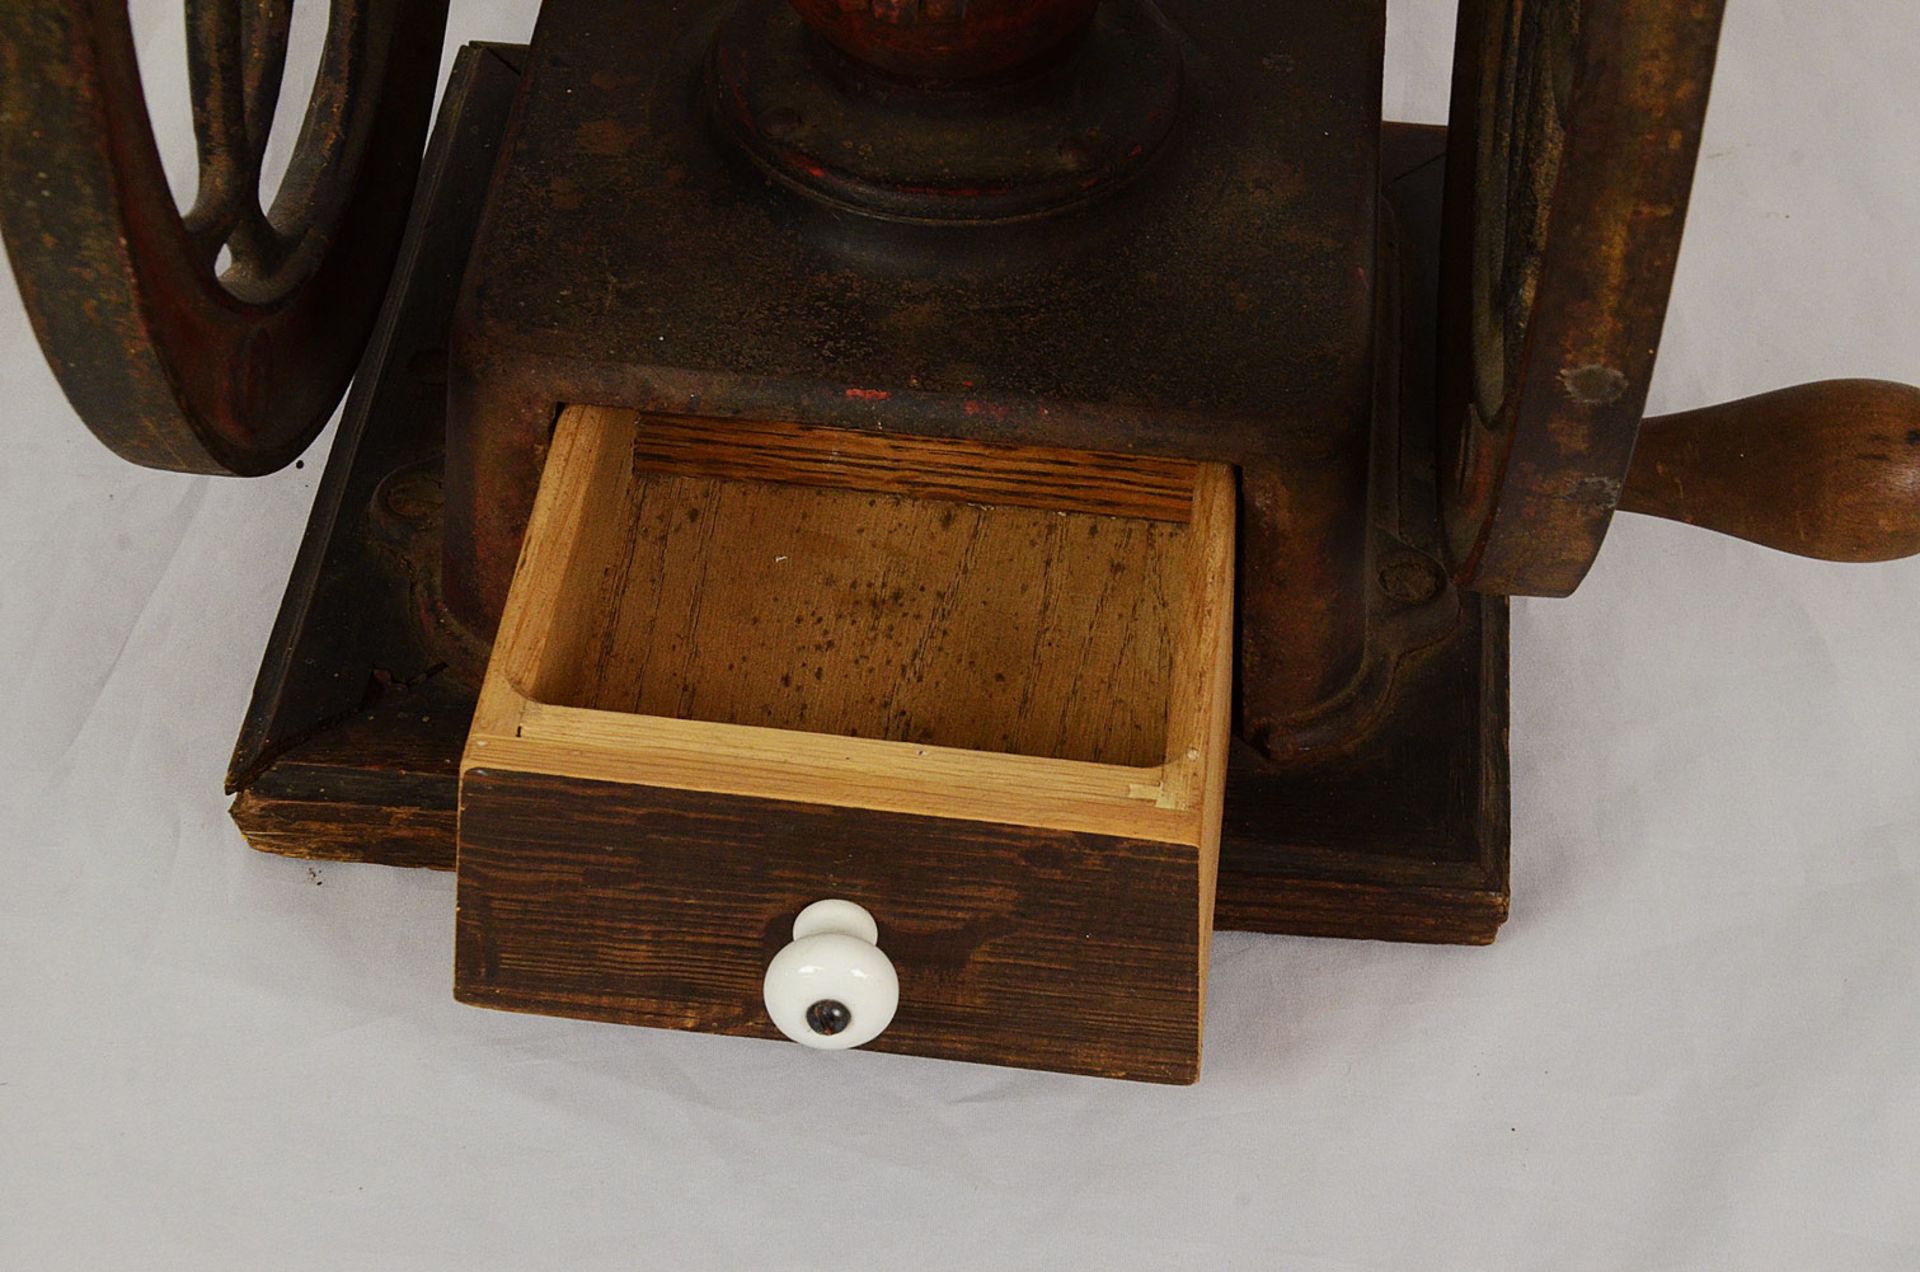 Vintage Landers Fray & Clark coffee grinder - Image 5 of 10